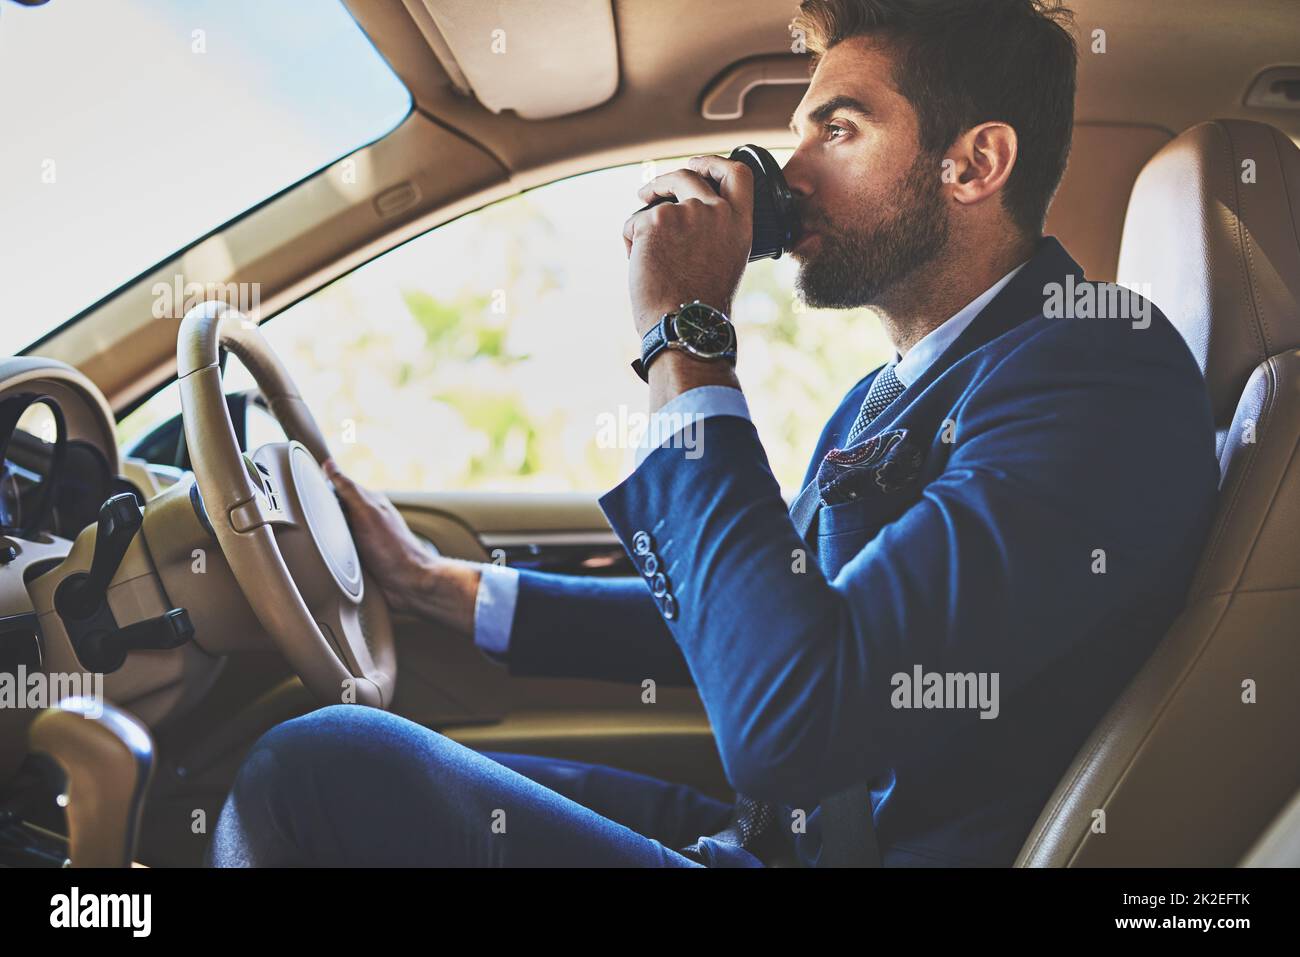 Kaffee hält ihn in Gang. Aufnahme eines fröhlichen jungen Geschäftsmannes, der in seinem Auto zur Arbeit fährt, während er im Verkehr sitzt und Kaffee trinkt. Stockfoto